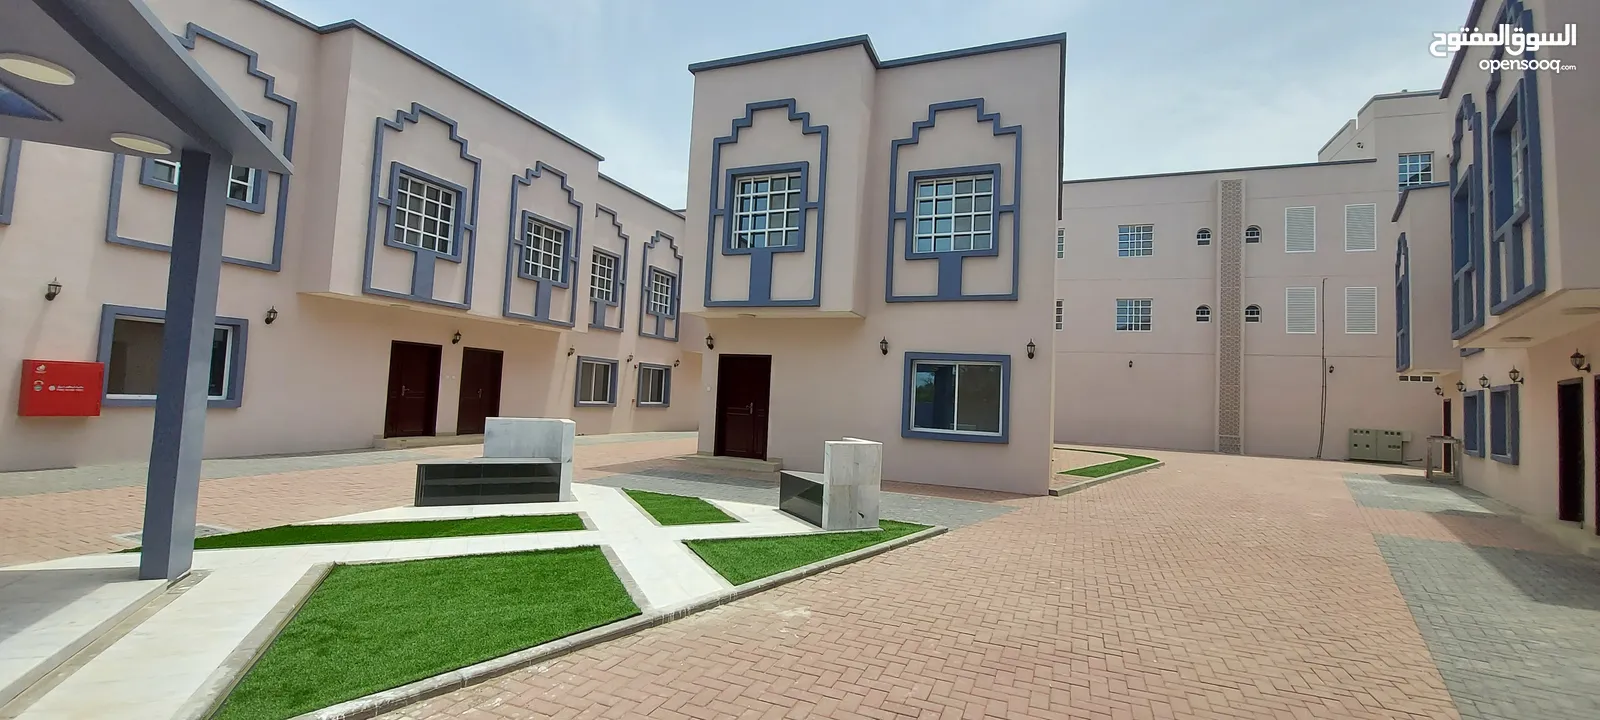 فلل للإيجار صحار - عمق Villas for rent Sohar - Amq